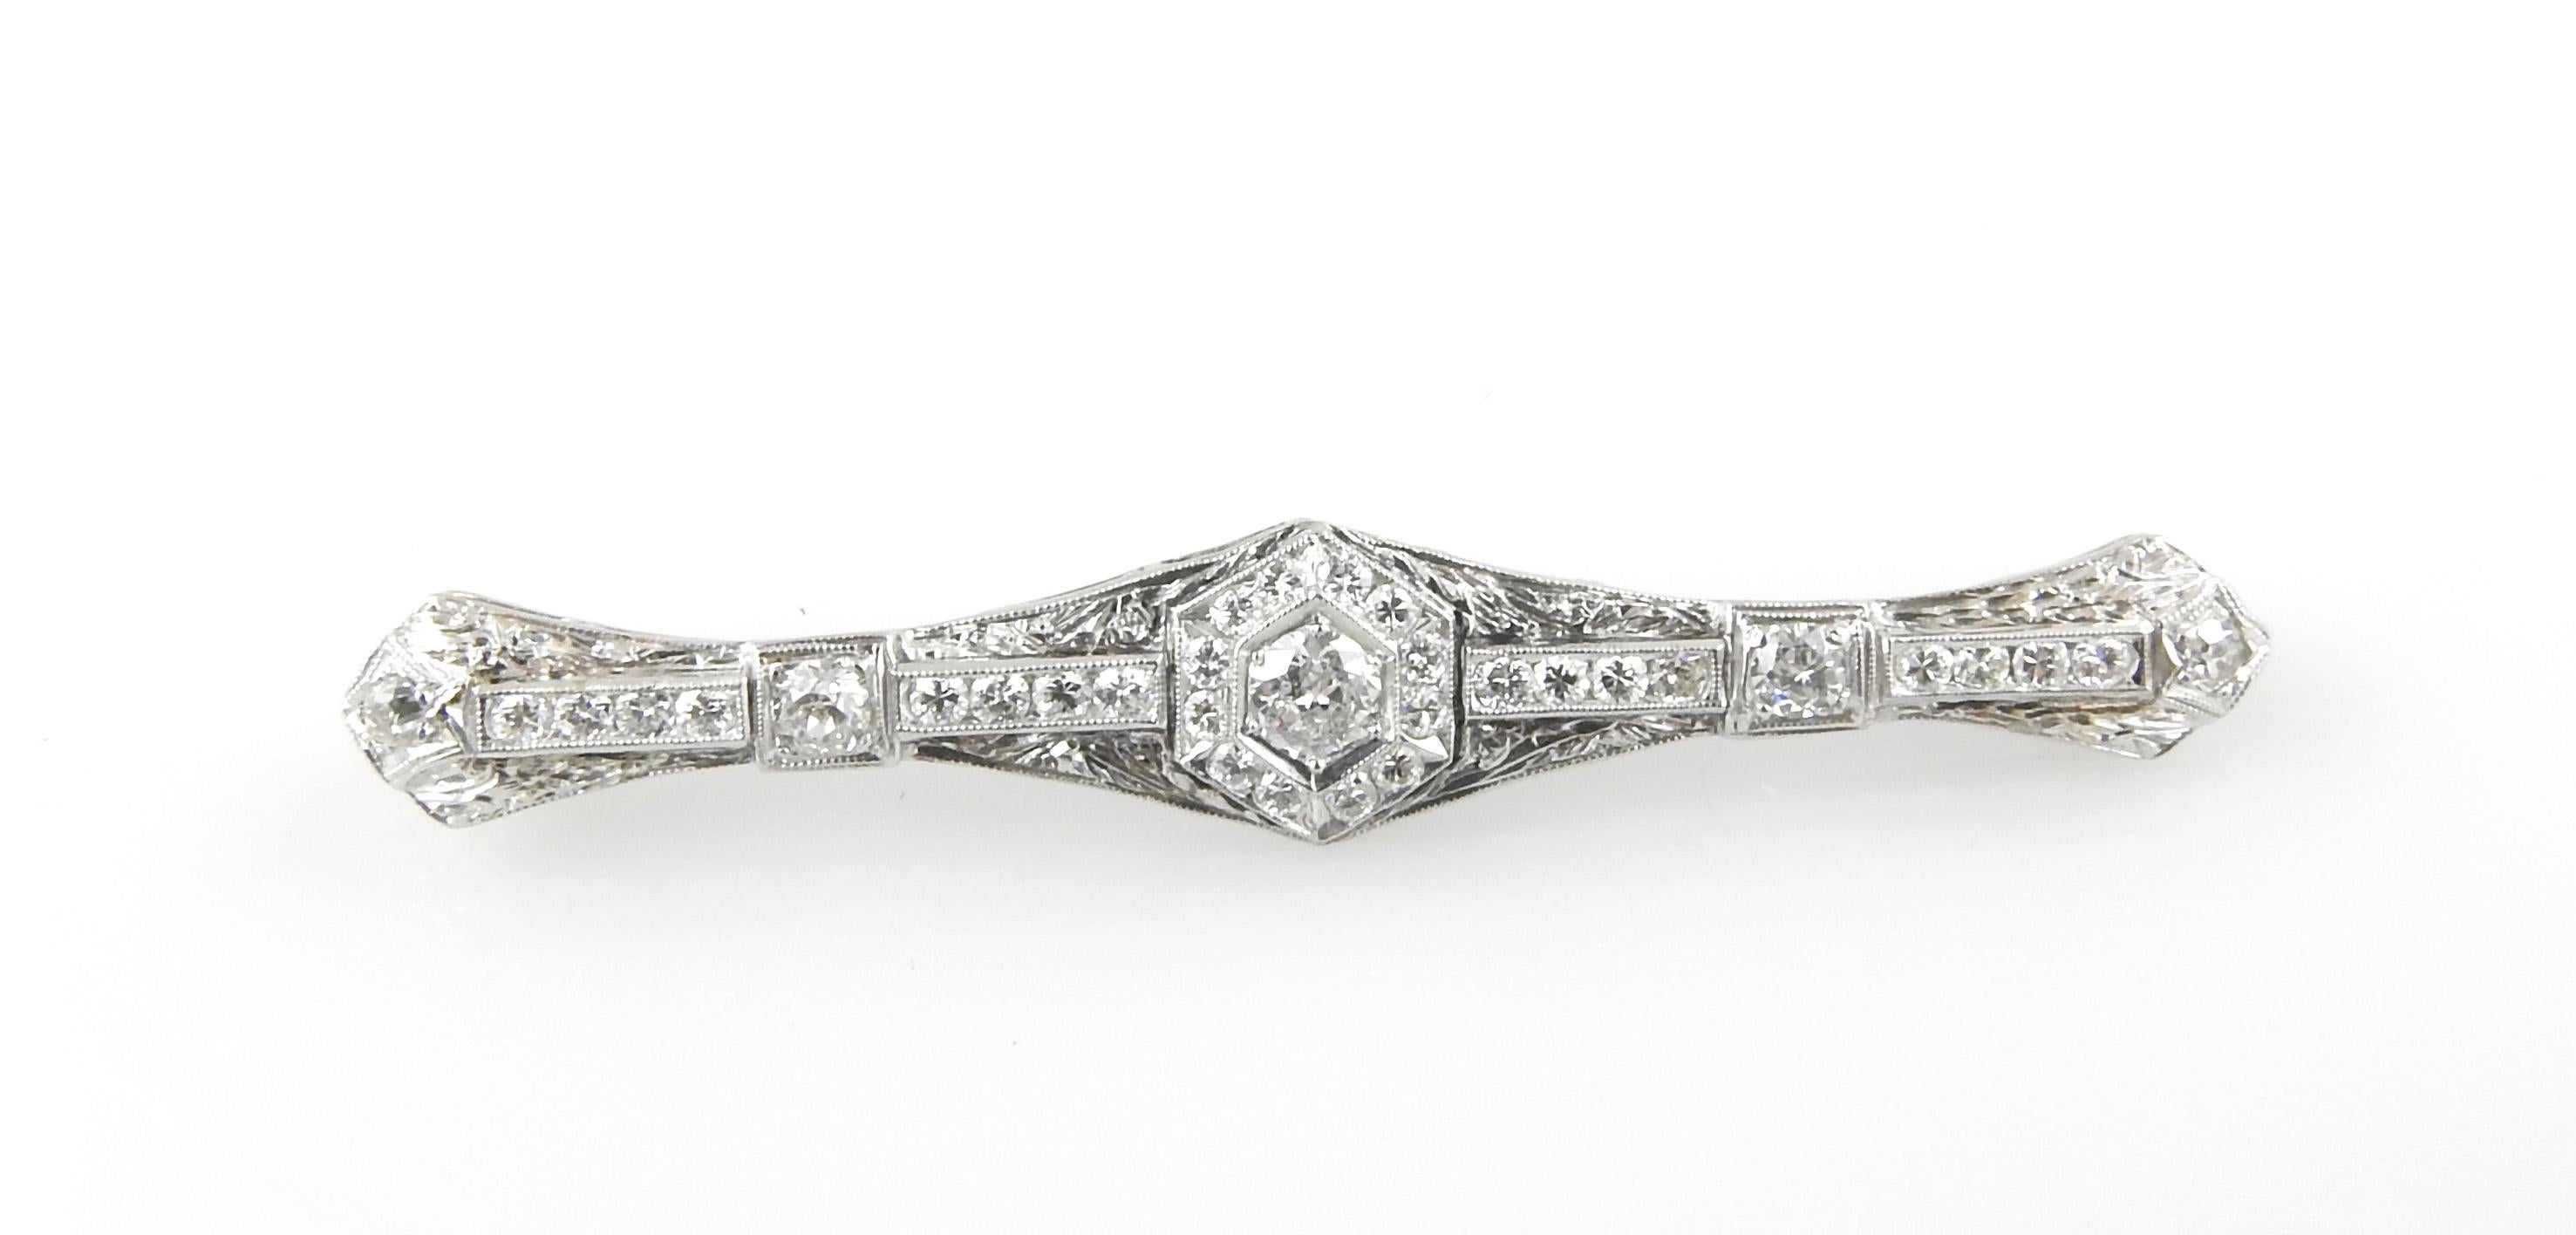 Diese exquisite Brosche enthält 33 runde Diamanten im Brillant- und Altminenschliff  in wunderschön detailliertem Weiß gehalten  Goldfiligran.

Ungefähres Gesamtgewicht der Diamanten:  1,40 Karat.  (Mitte - .25 ct.)

Farbe des Diamanten: 